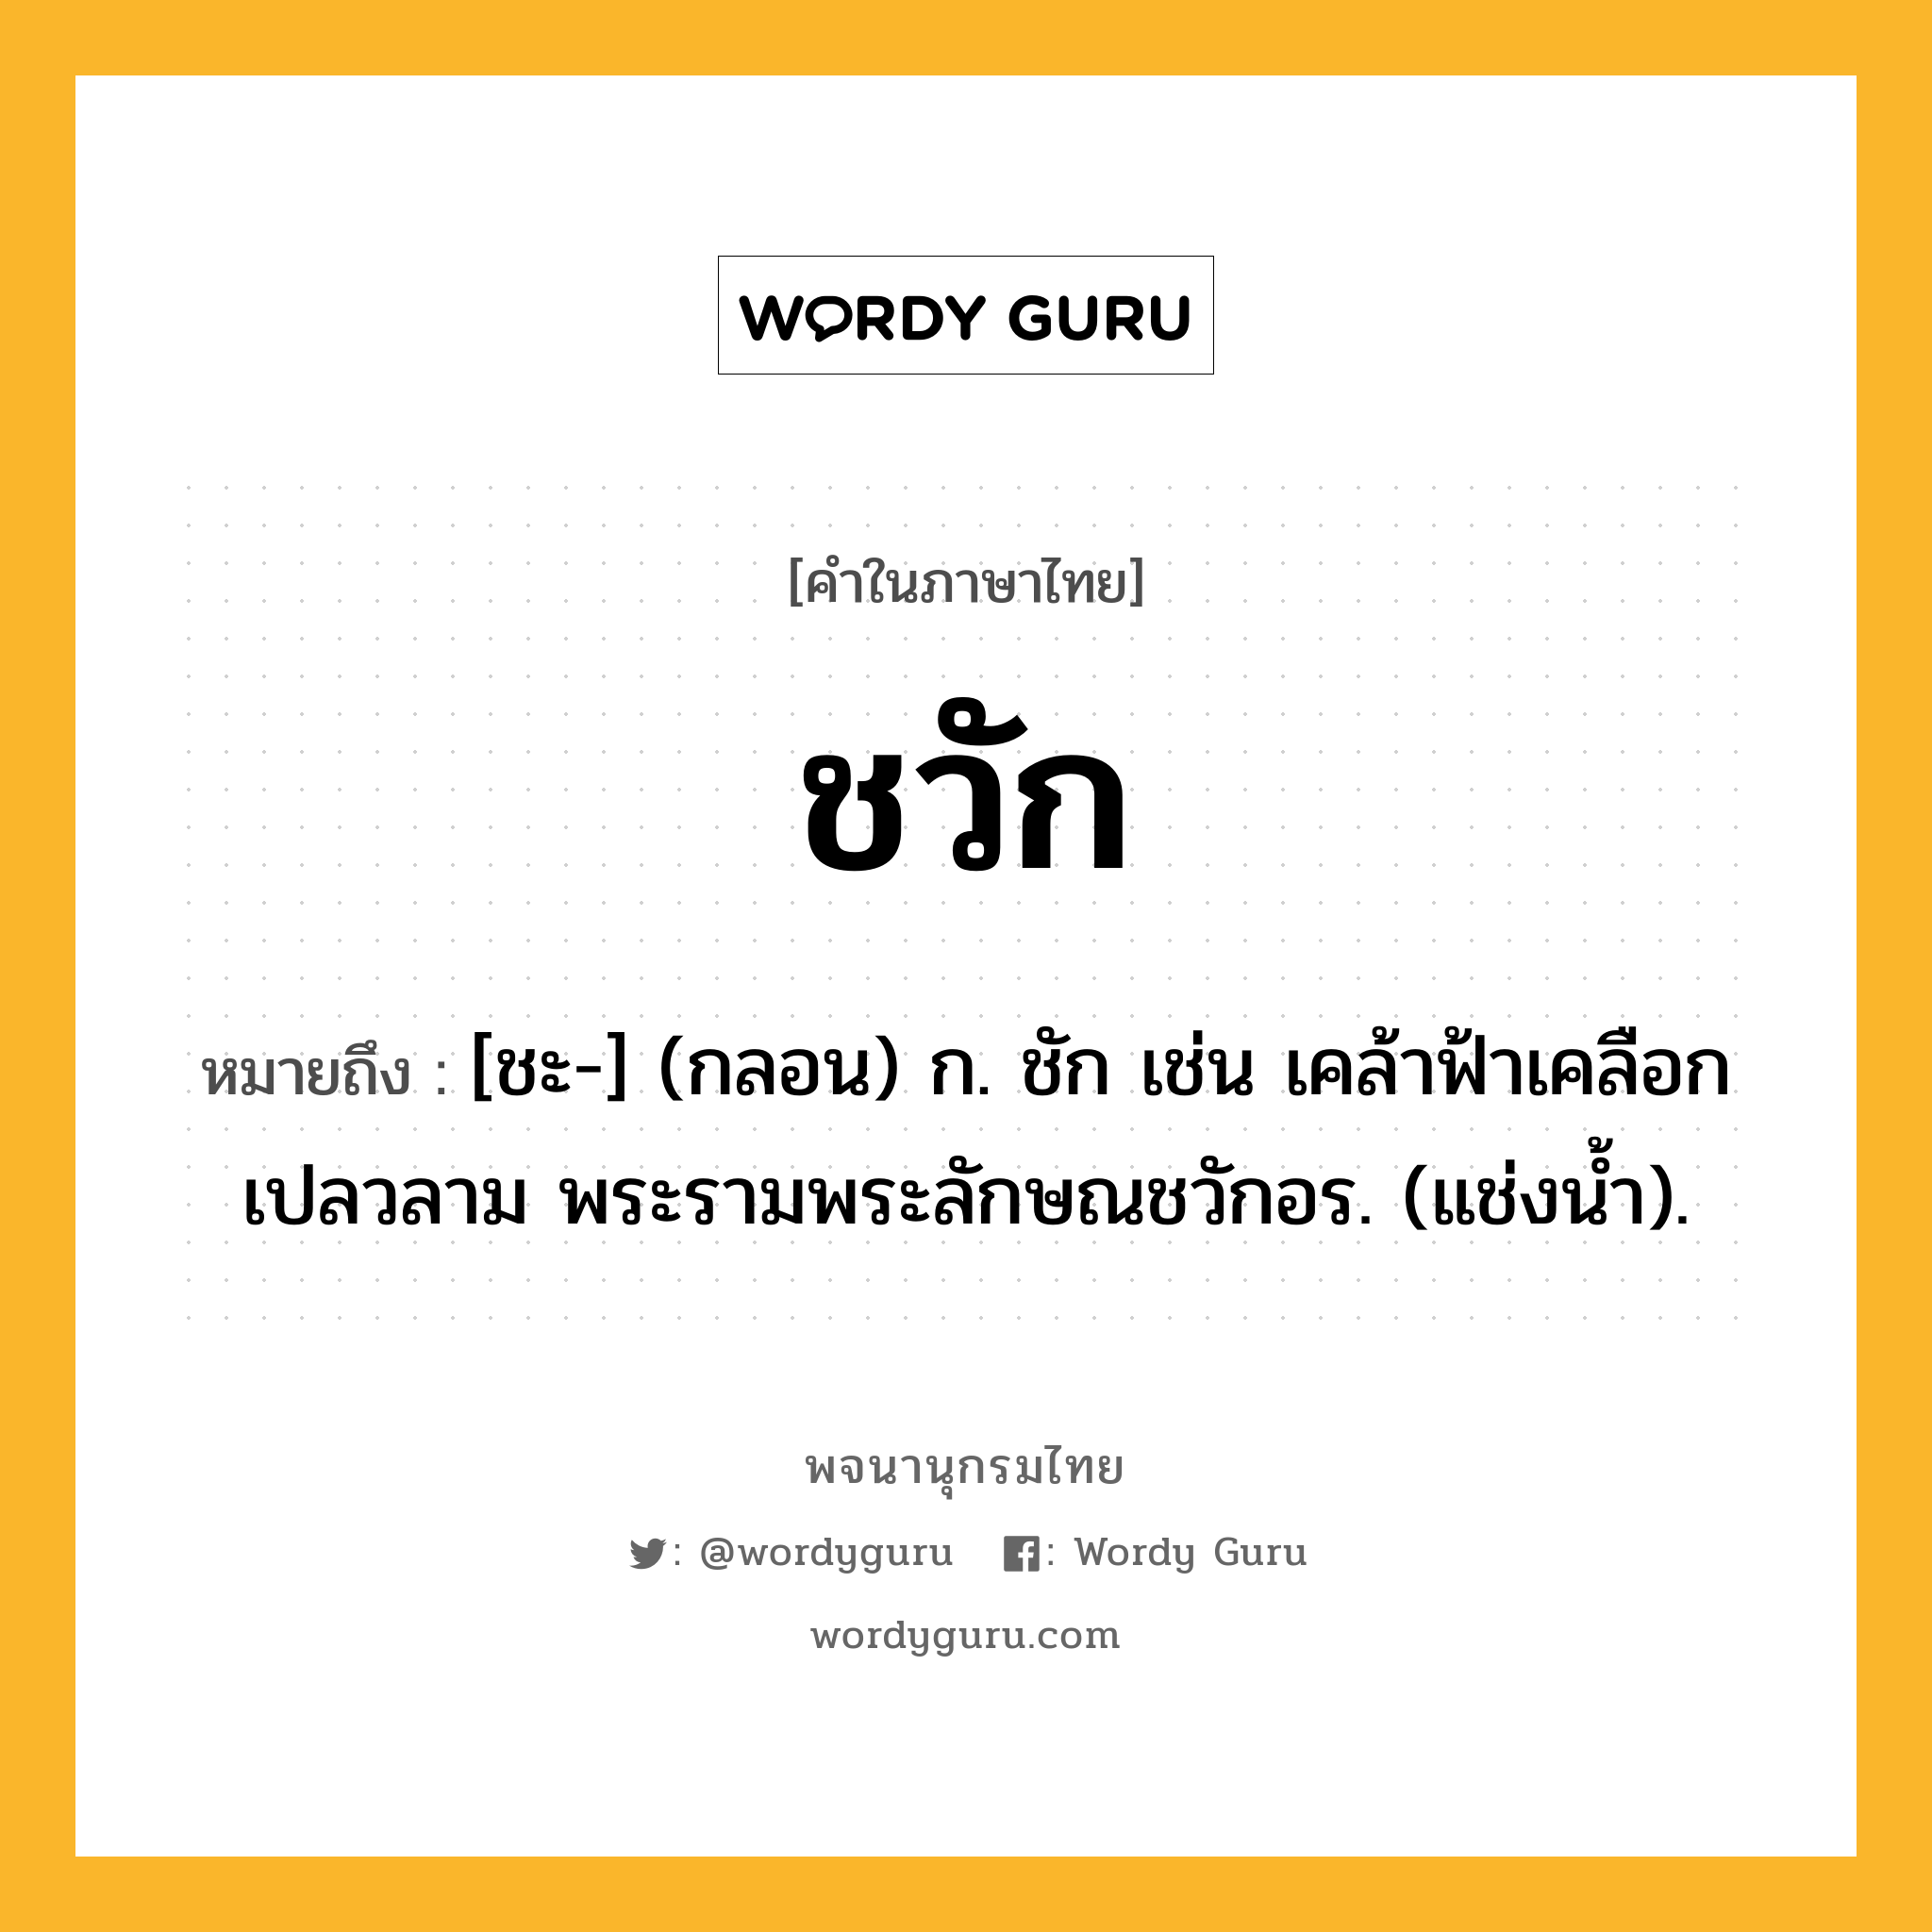 ชวัก ความหมาย หมายถึงอะไร?, คำในภาษาไทย ชวัก หมายถึง [ชะ-] (กลอน) ก. ชัก เช่น เคล้าฟ้าเคลือกเปลวลาม พระรามพระลักษณชวักอร. (แช่งน้ำ).